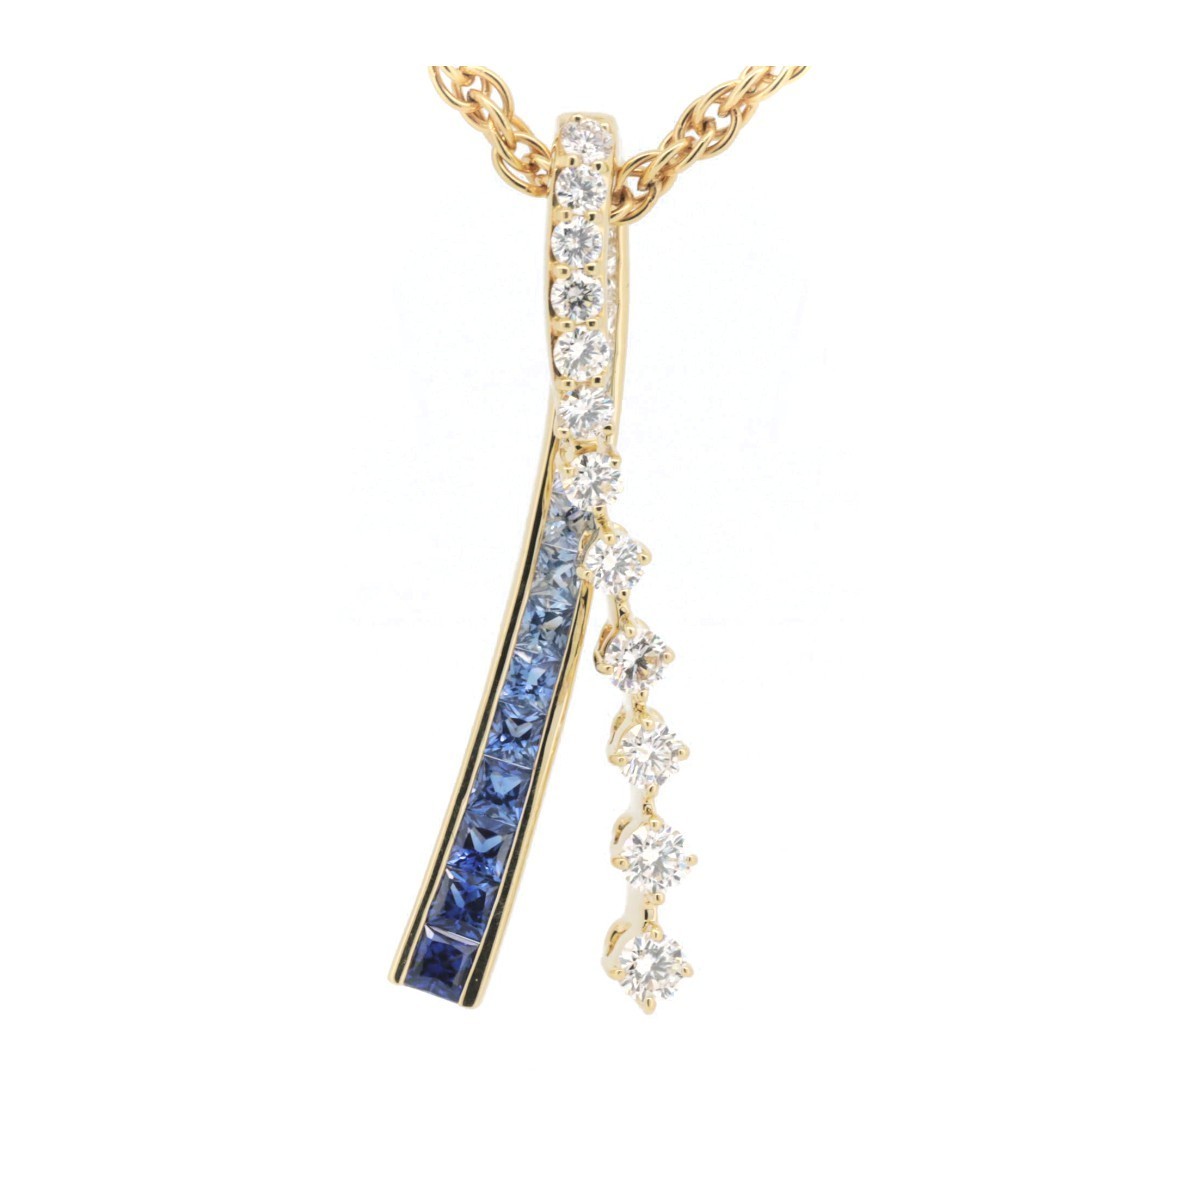 june sapphire diamond pendant S1.5ct D0.8ct K18YG 18 gold necklace attaching pawnshop exhibition 